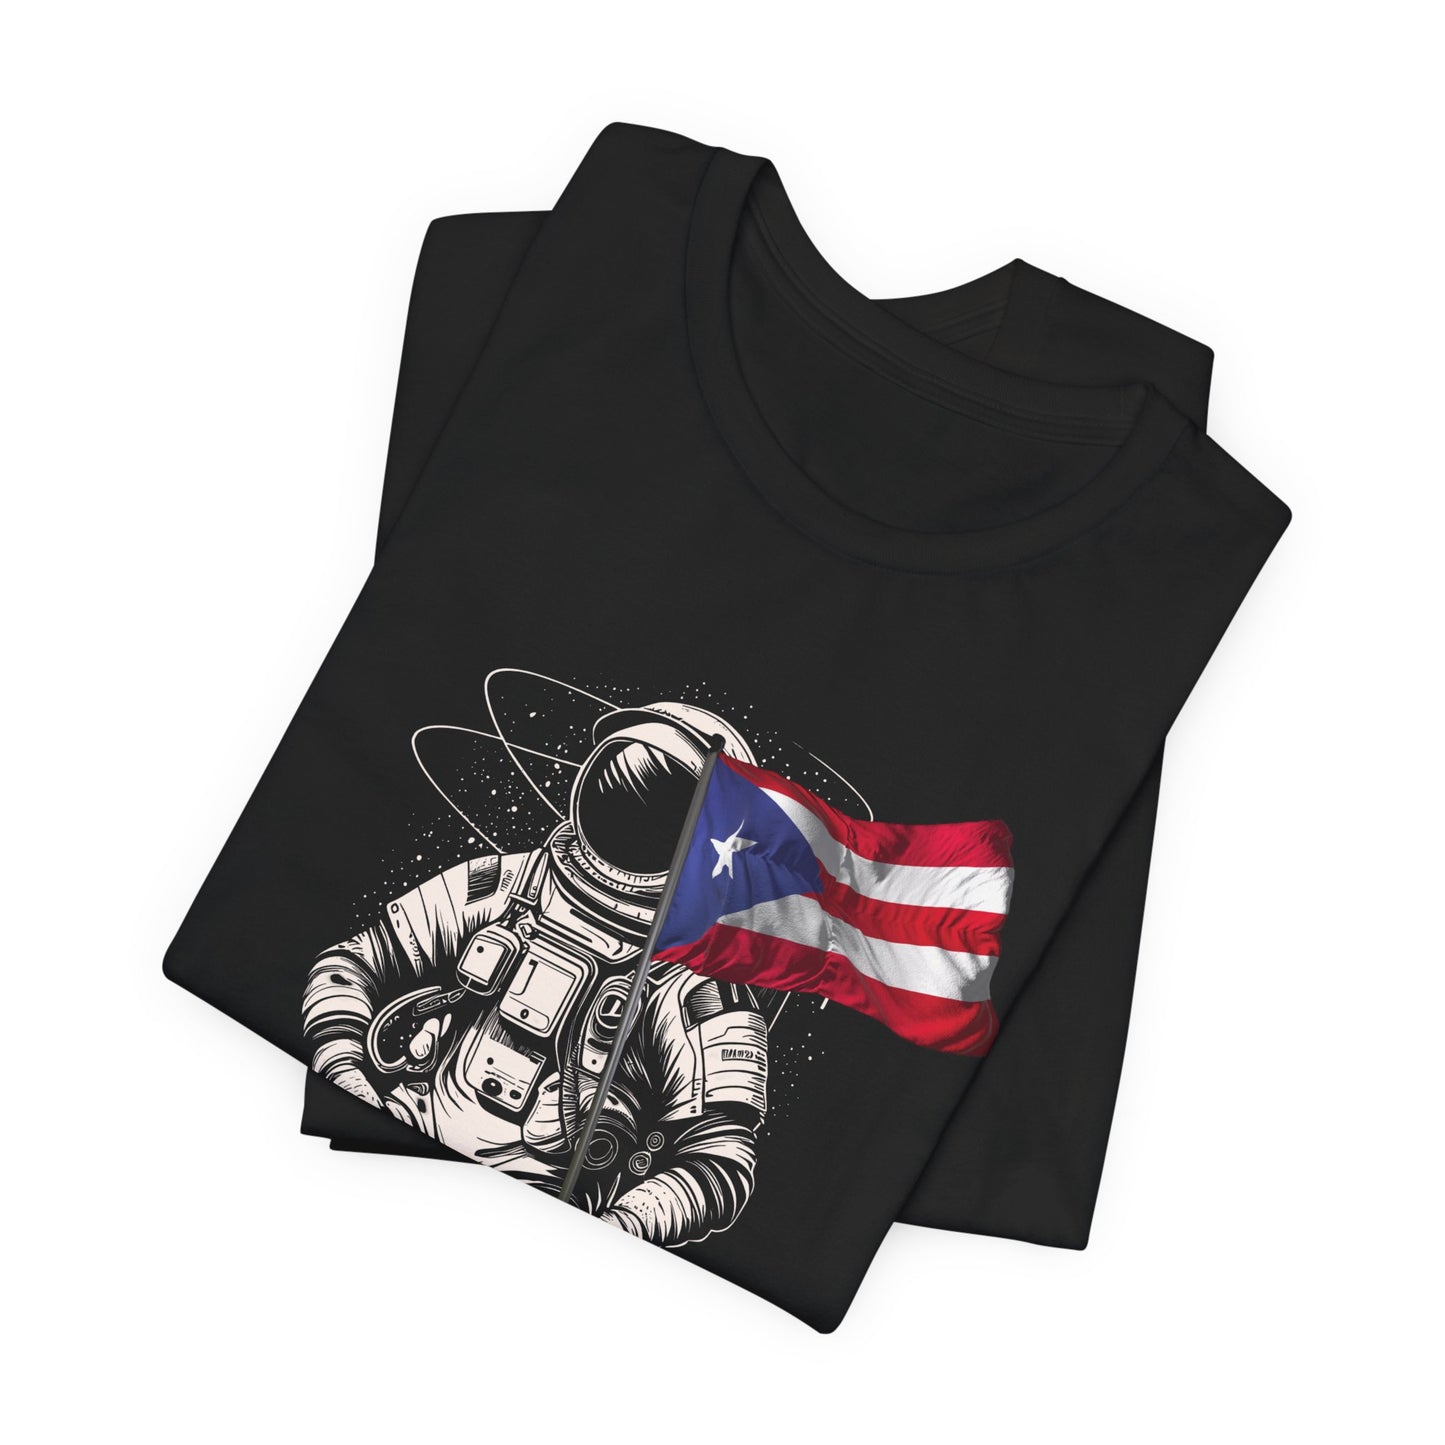 BORICUA HASTA EN LA LUNA Unisex Puerto Rico Shirt 4everBoricua™️